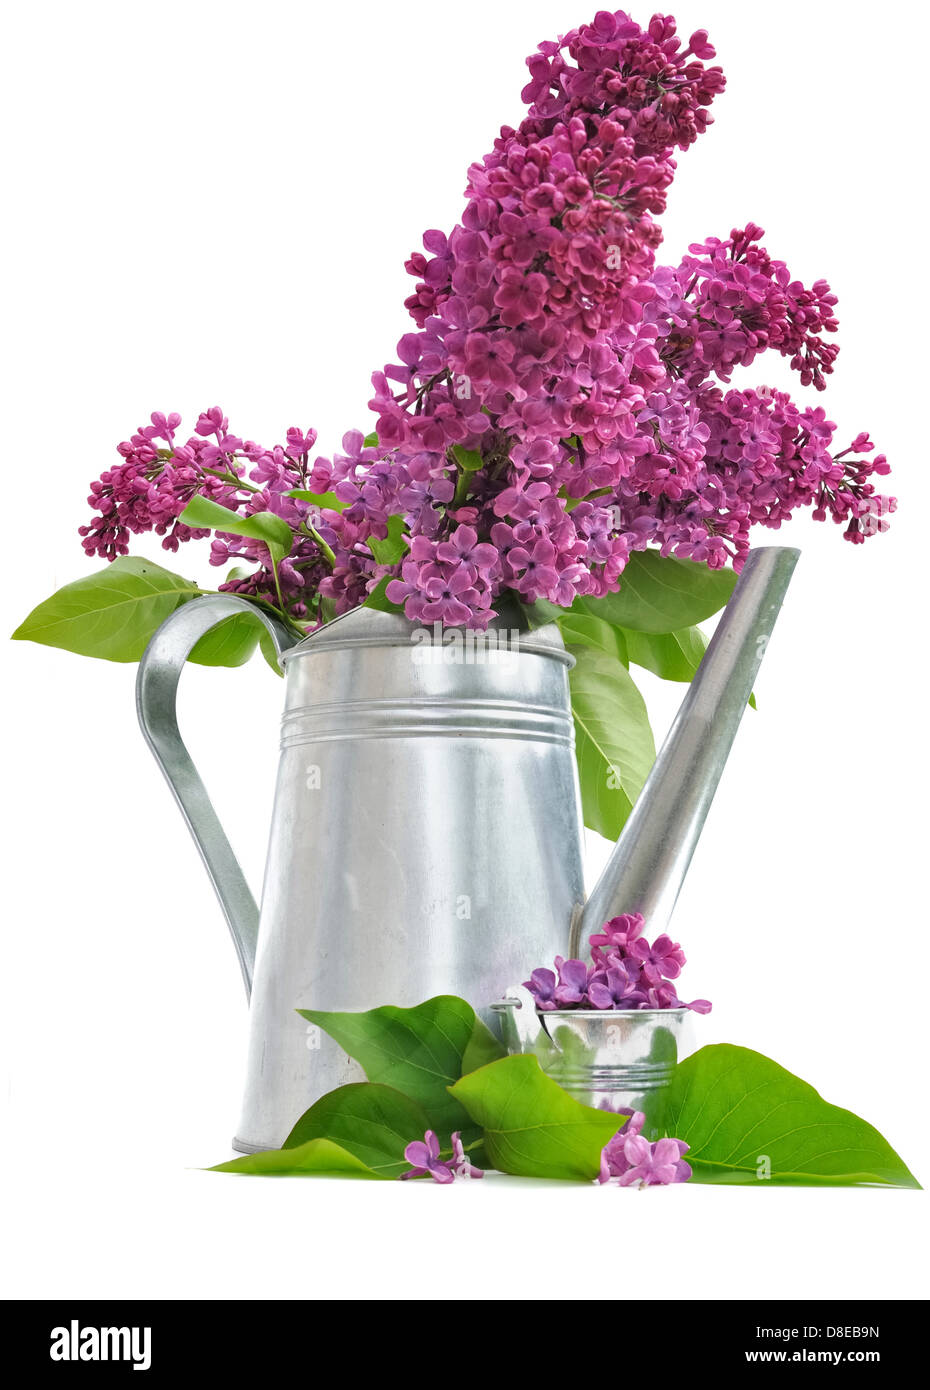 Bouquet de lilas dans un arrosoir sur fond blanc Banque D'Images